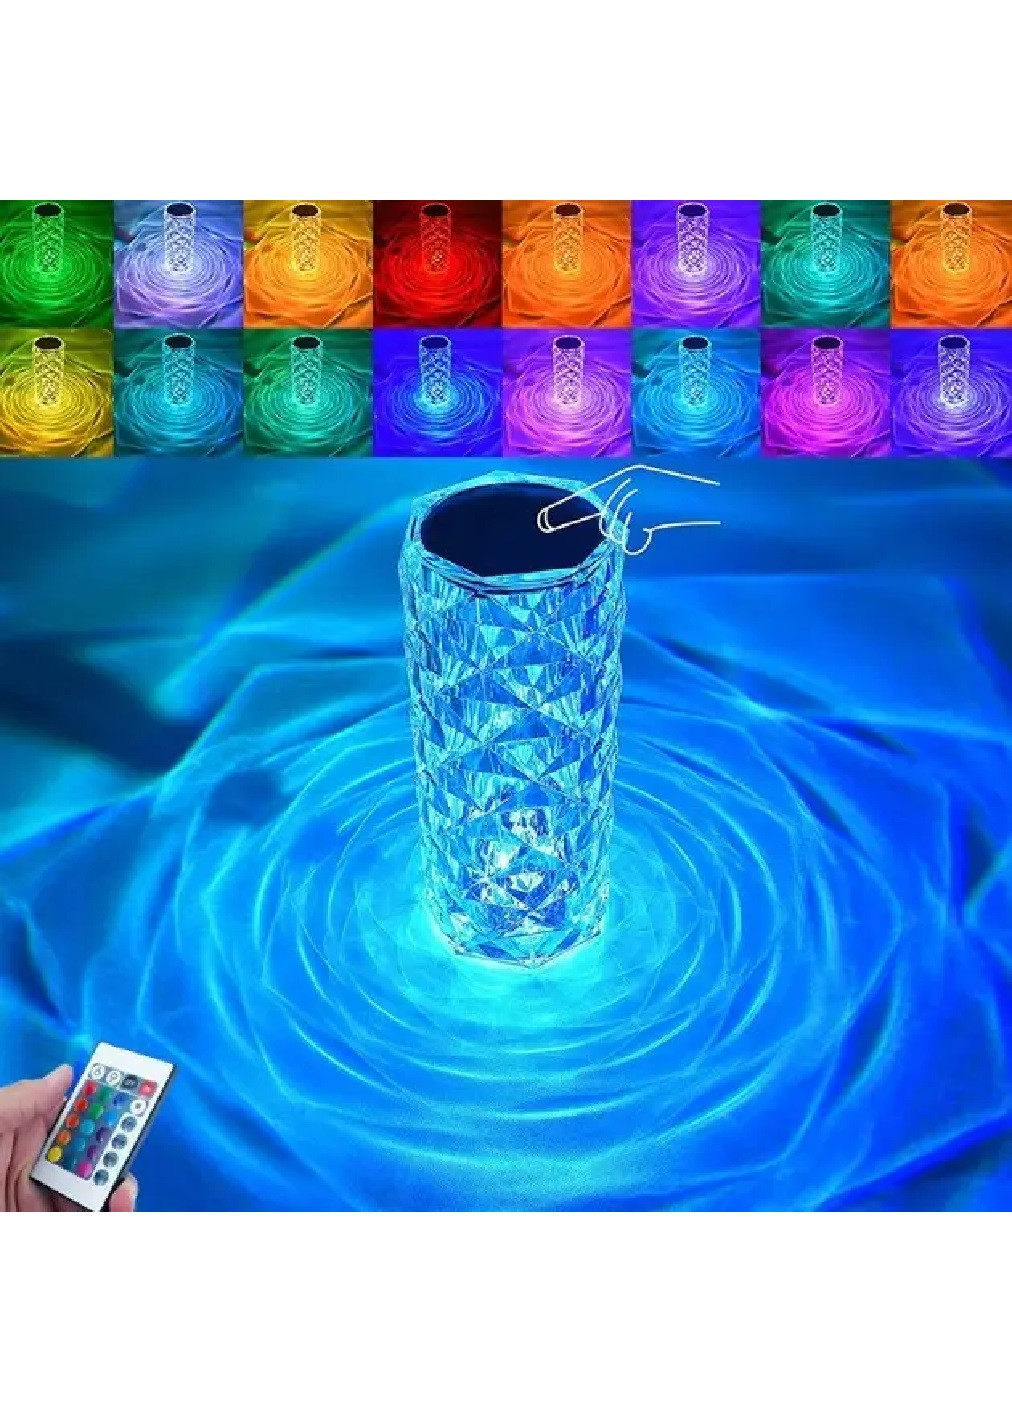 Ночник светильник лампа сенсорная кристальная на аккумуляторе с пультом RGB подсветкой 16 цветов 16х7 см (475846-Prob) Unbranded (272598560)